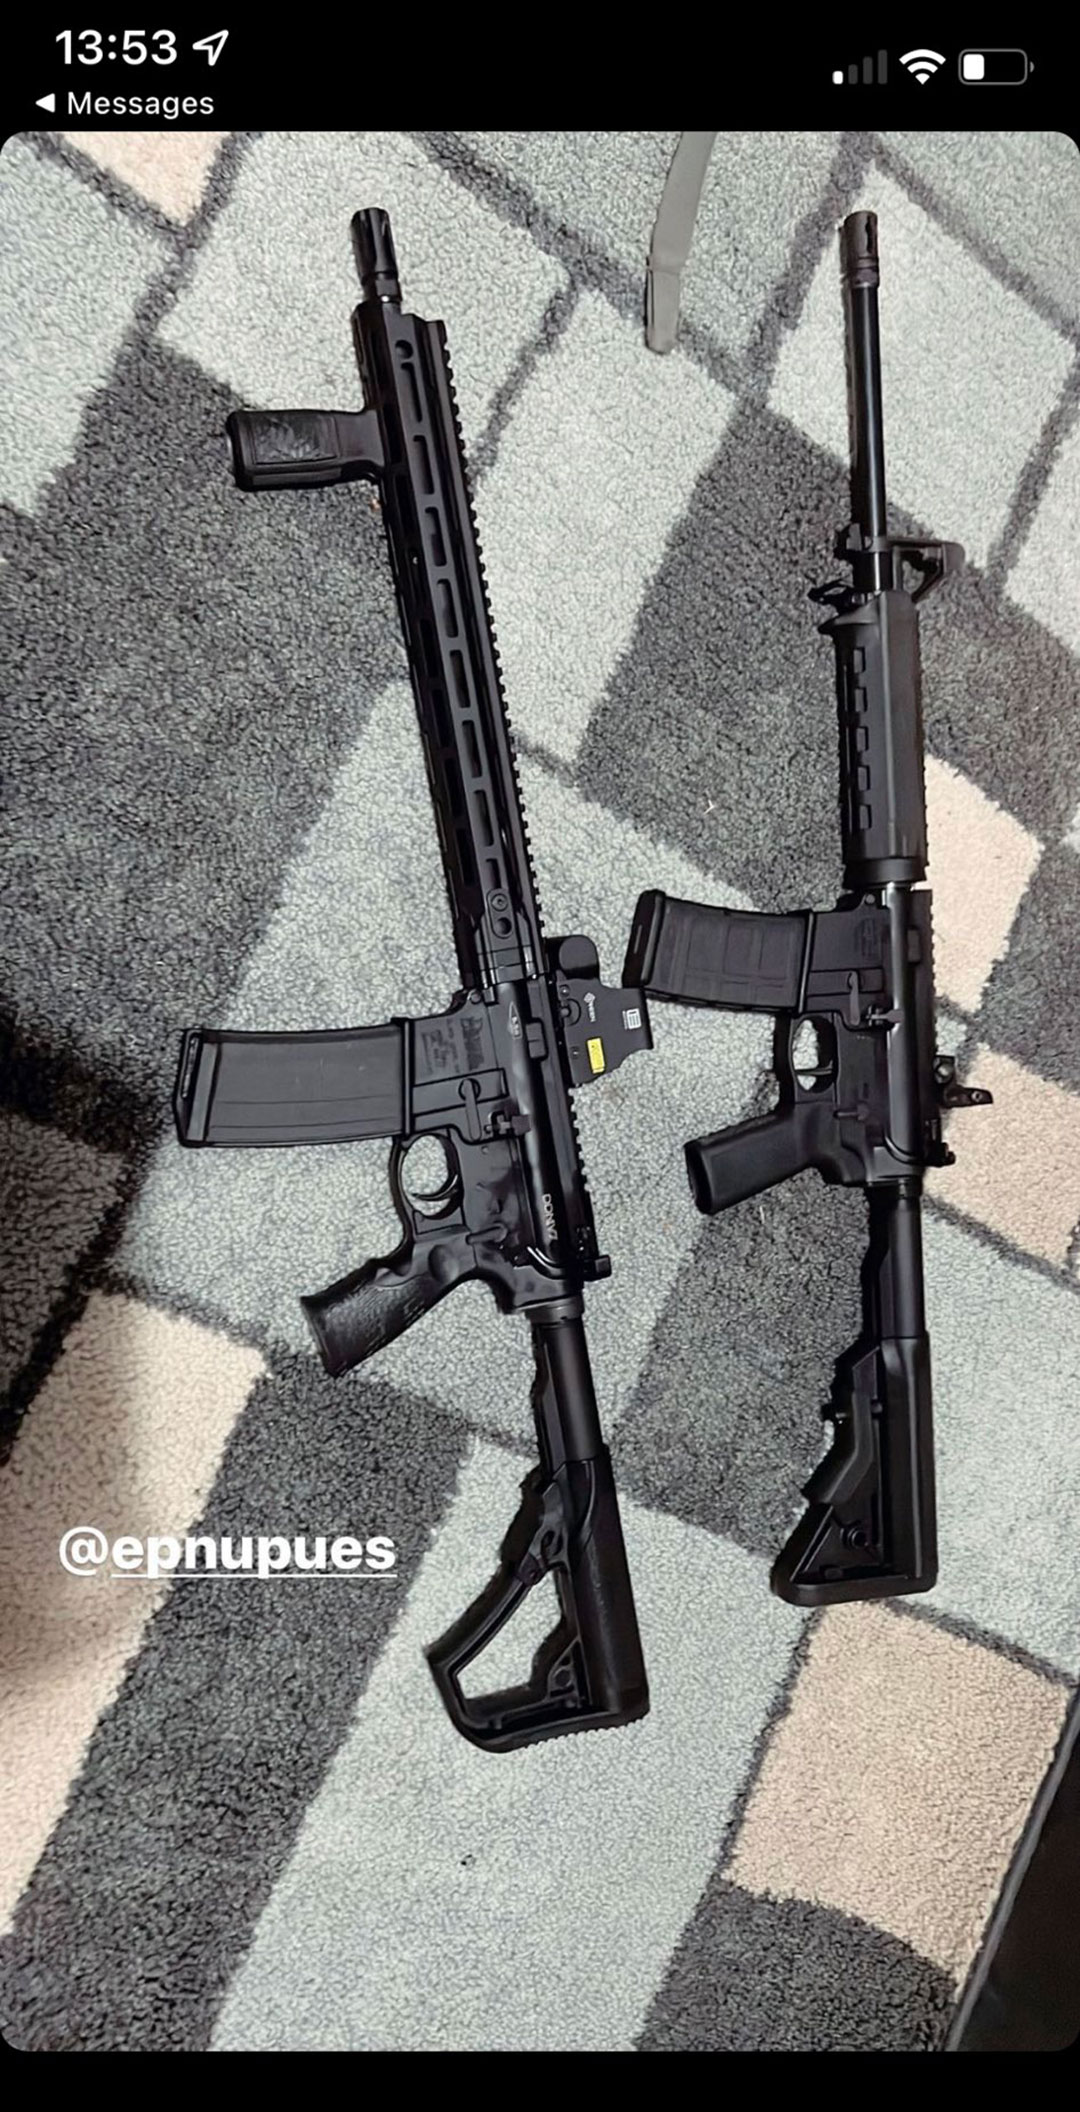 Hace cuatro días, publicó imágenes de dos rifles a los que se refirió como “mis fotos de armas”